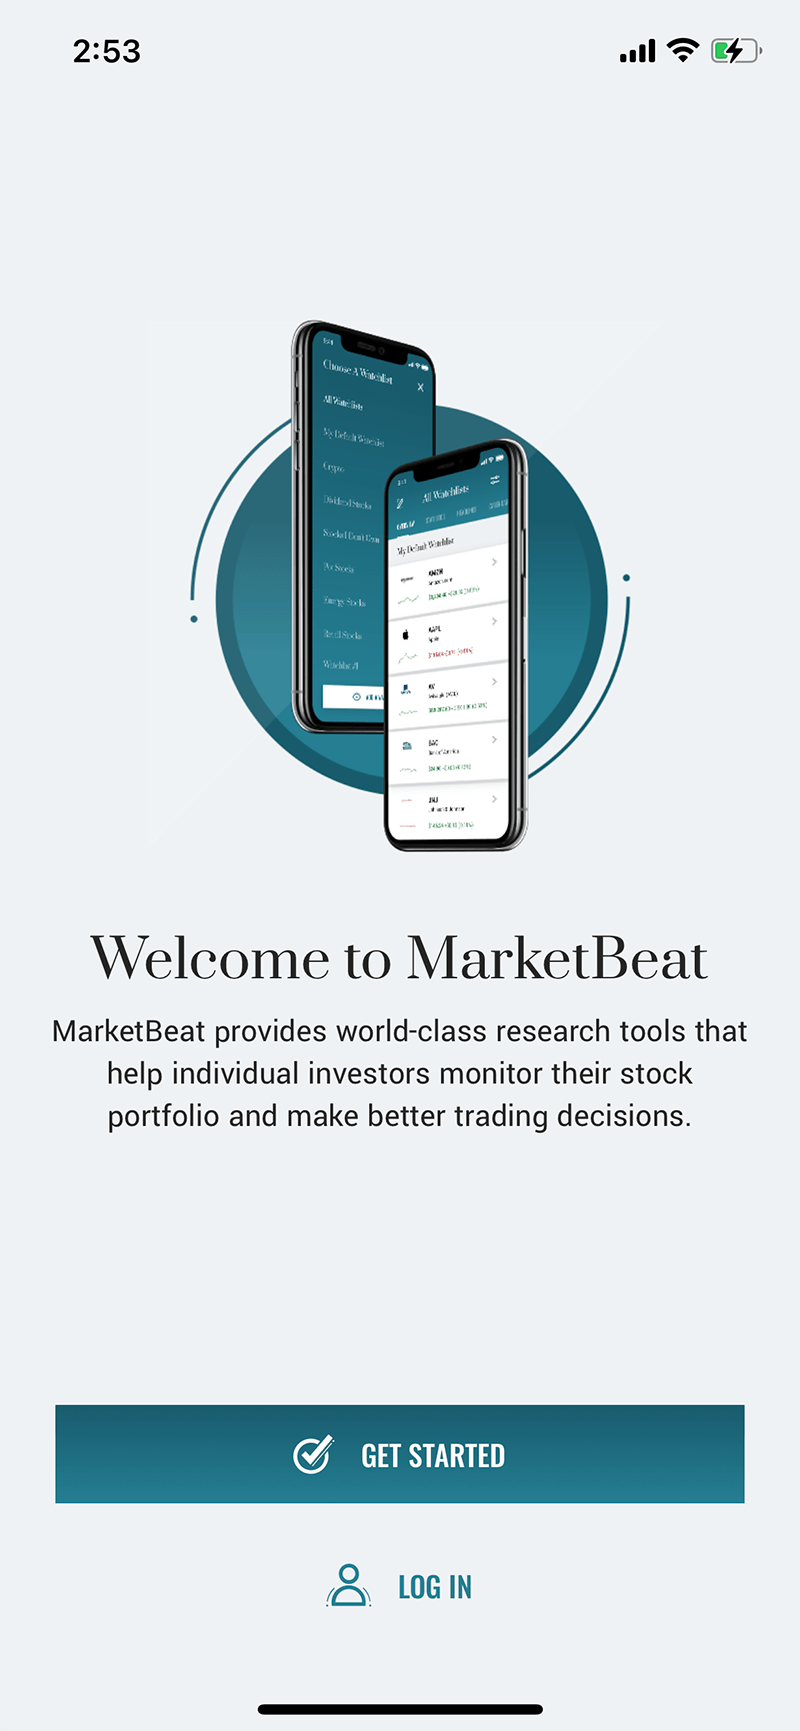 MarketBeat App Screenshot - Welcome